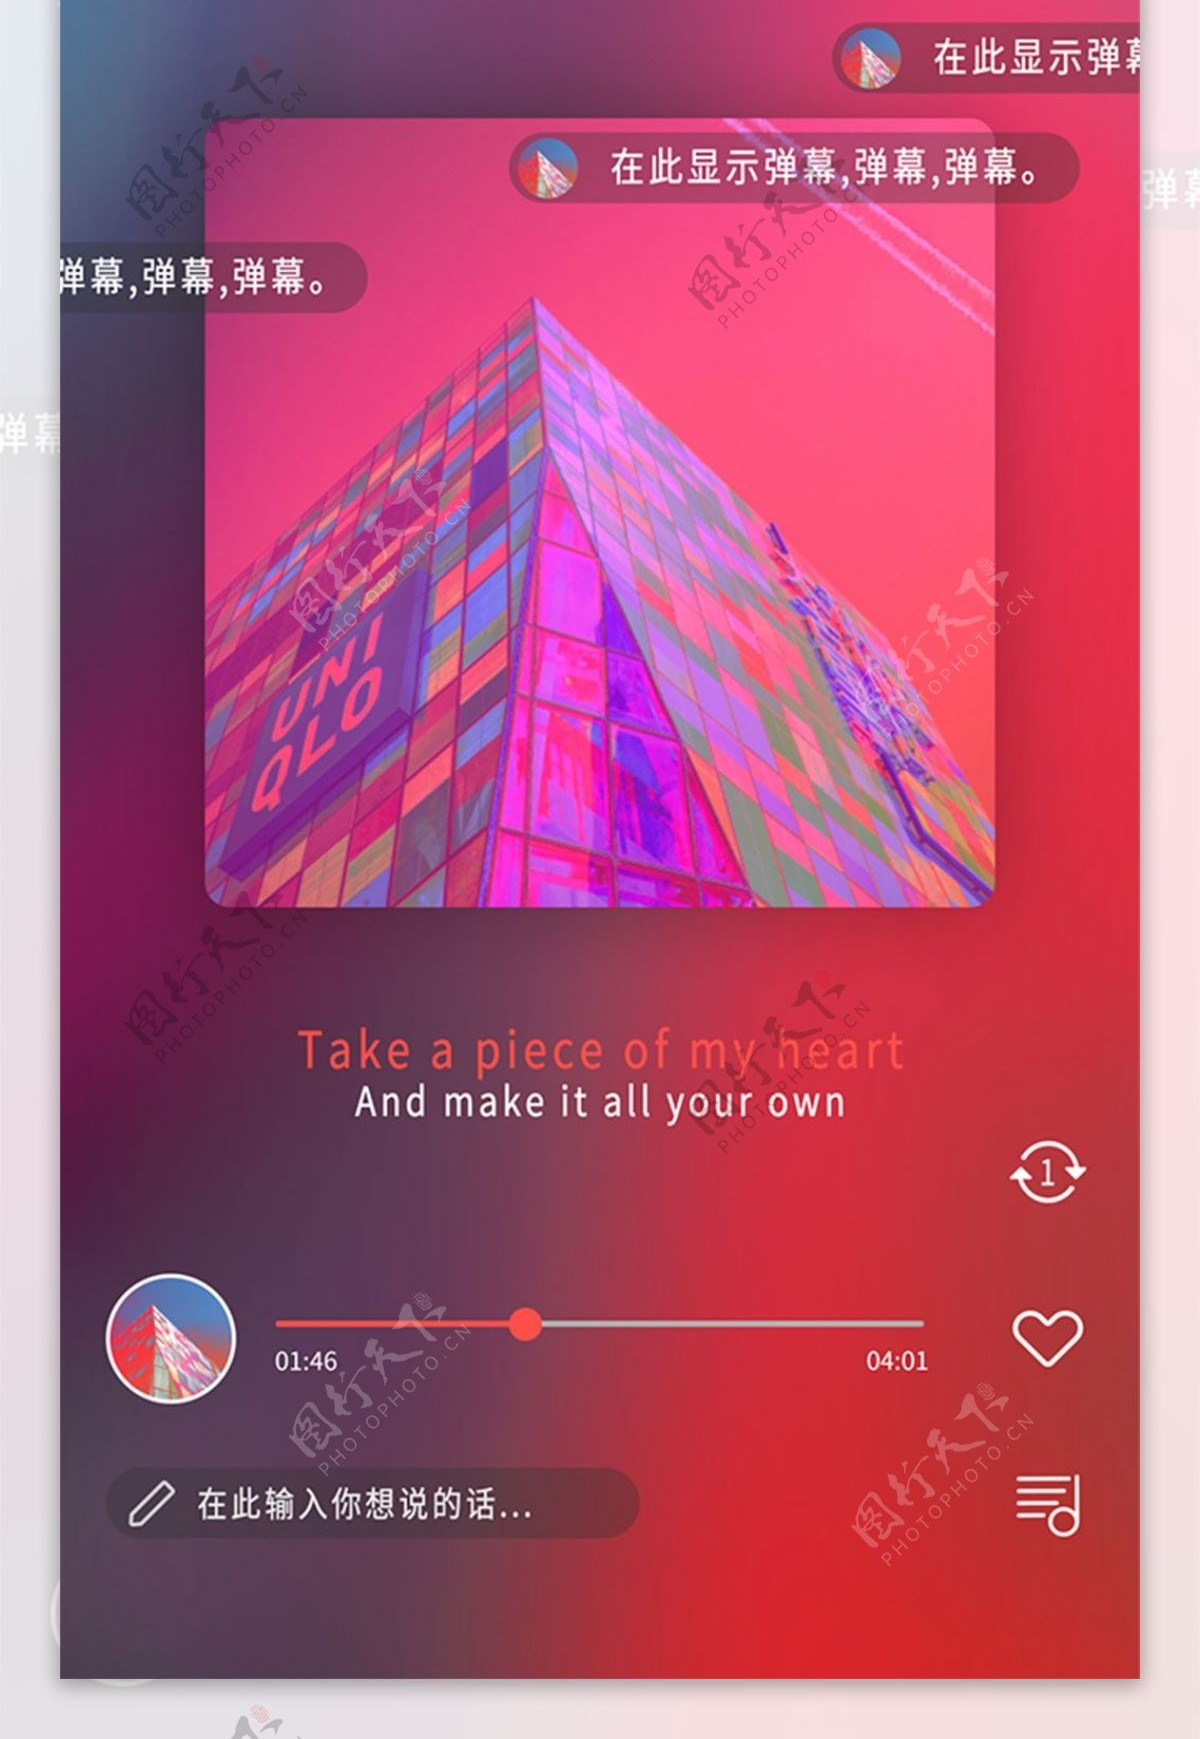 原创音乐app播放界面设计